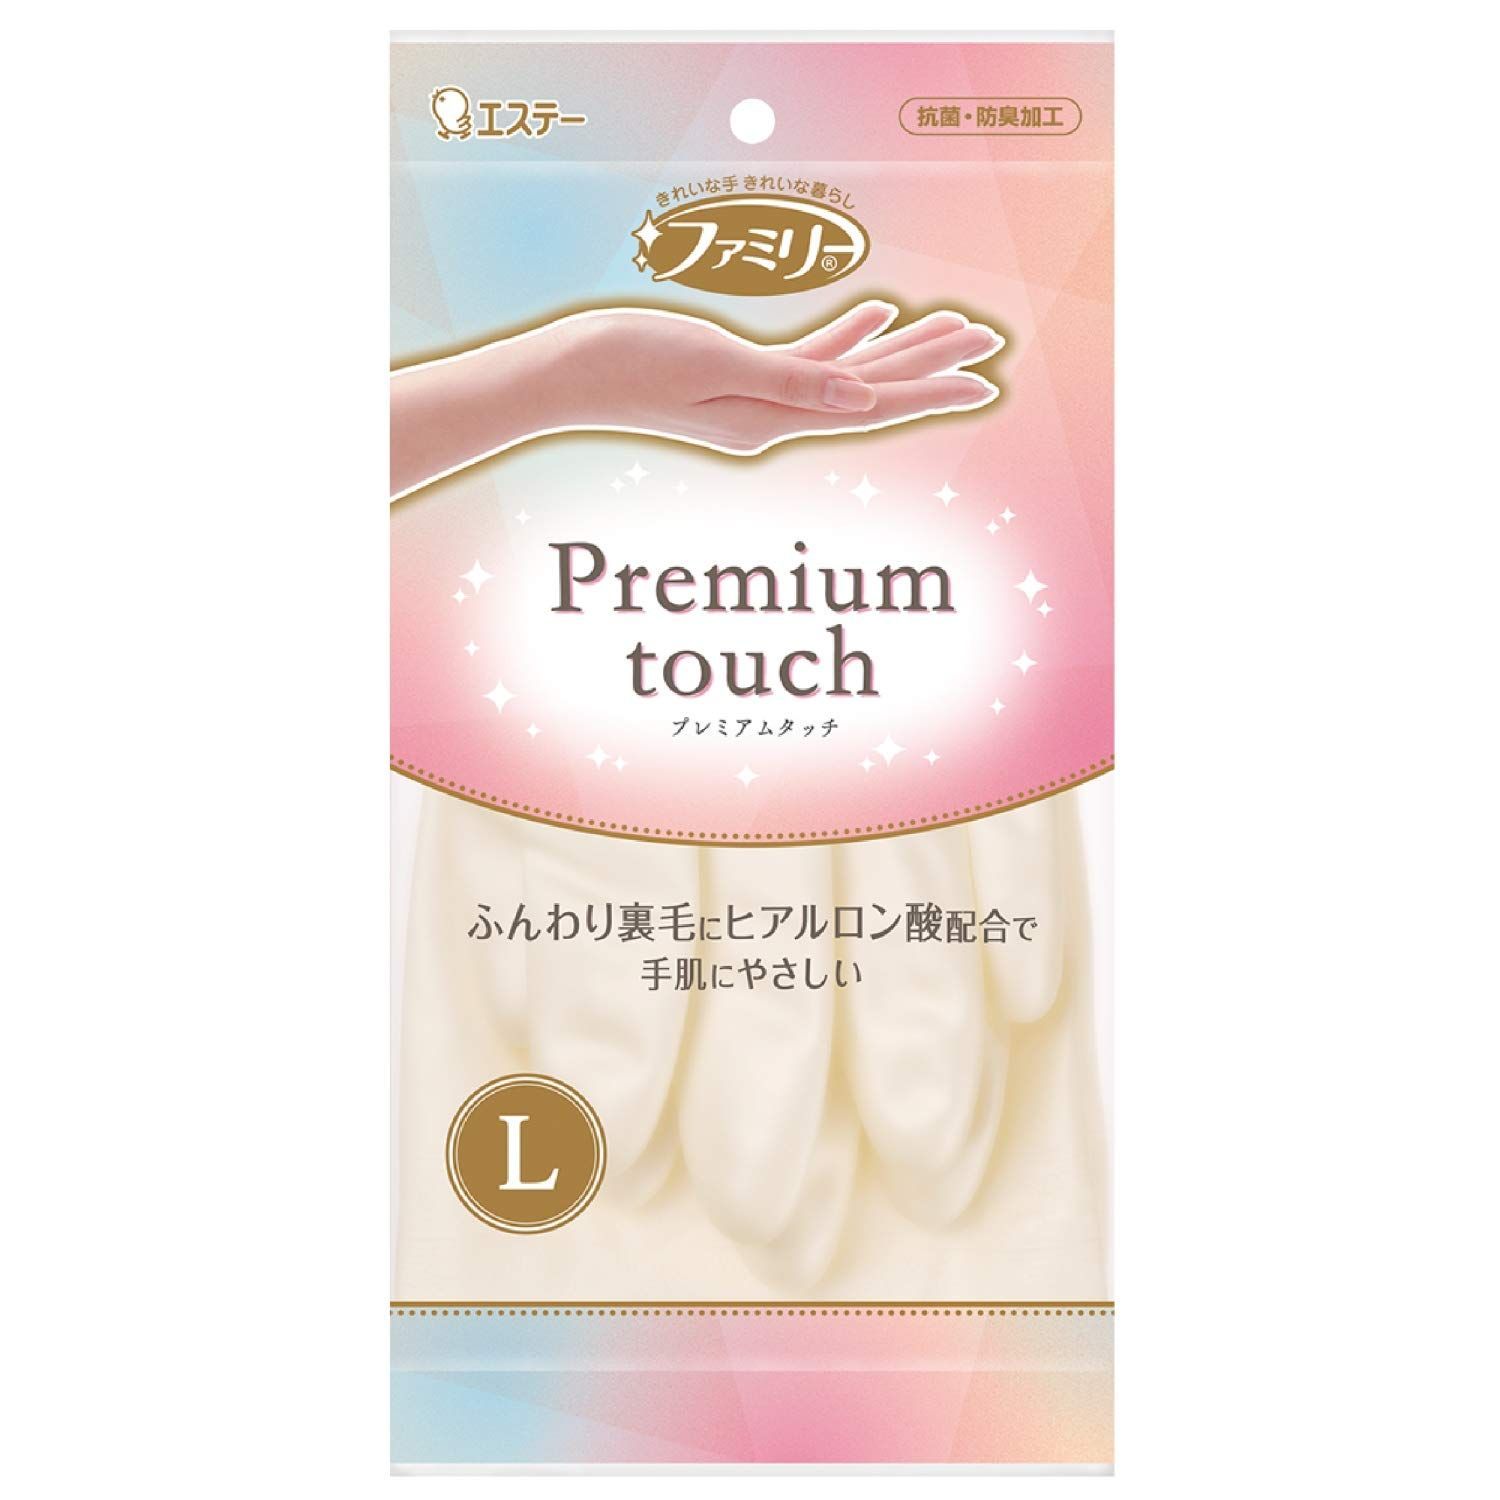 ST Family Premium Touch Перчатки виниловые для бытовых и хозяйственных нужд средней толщины пропитаны гиалуроновой кислотой размер L